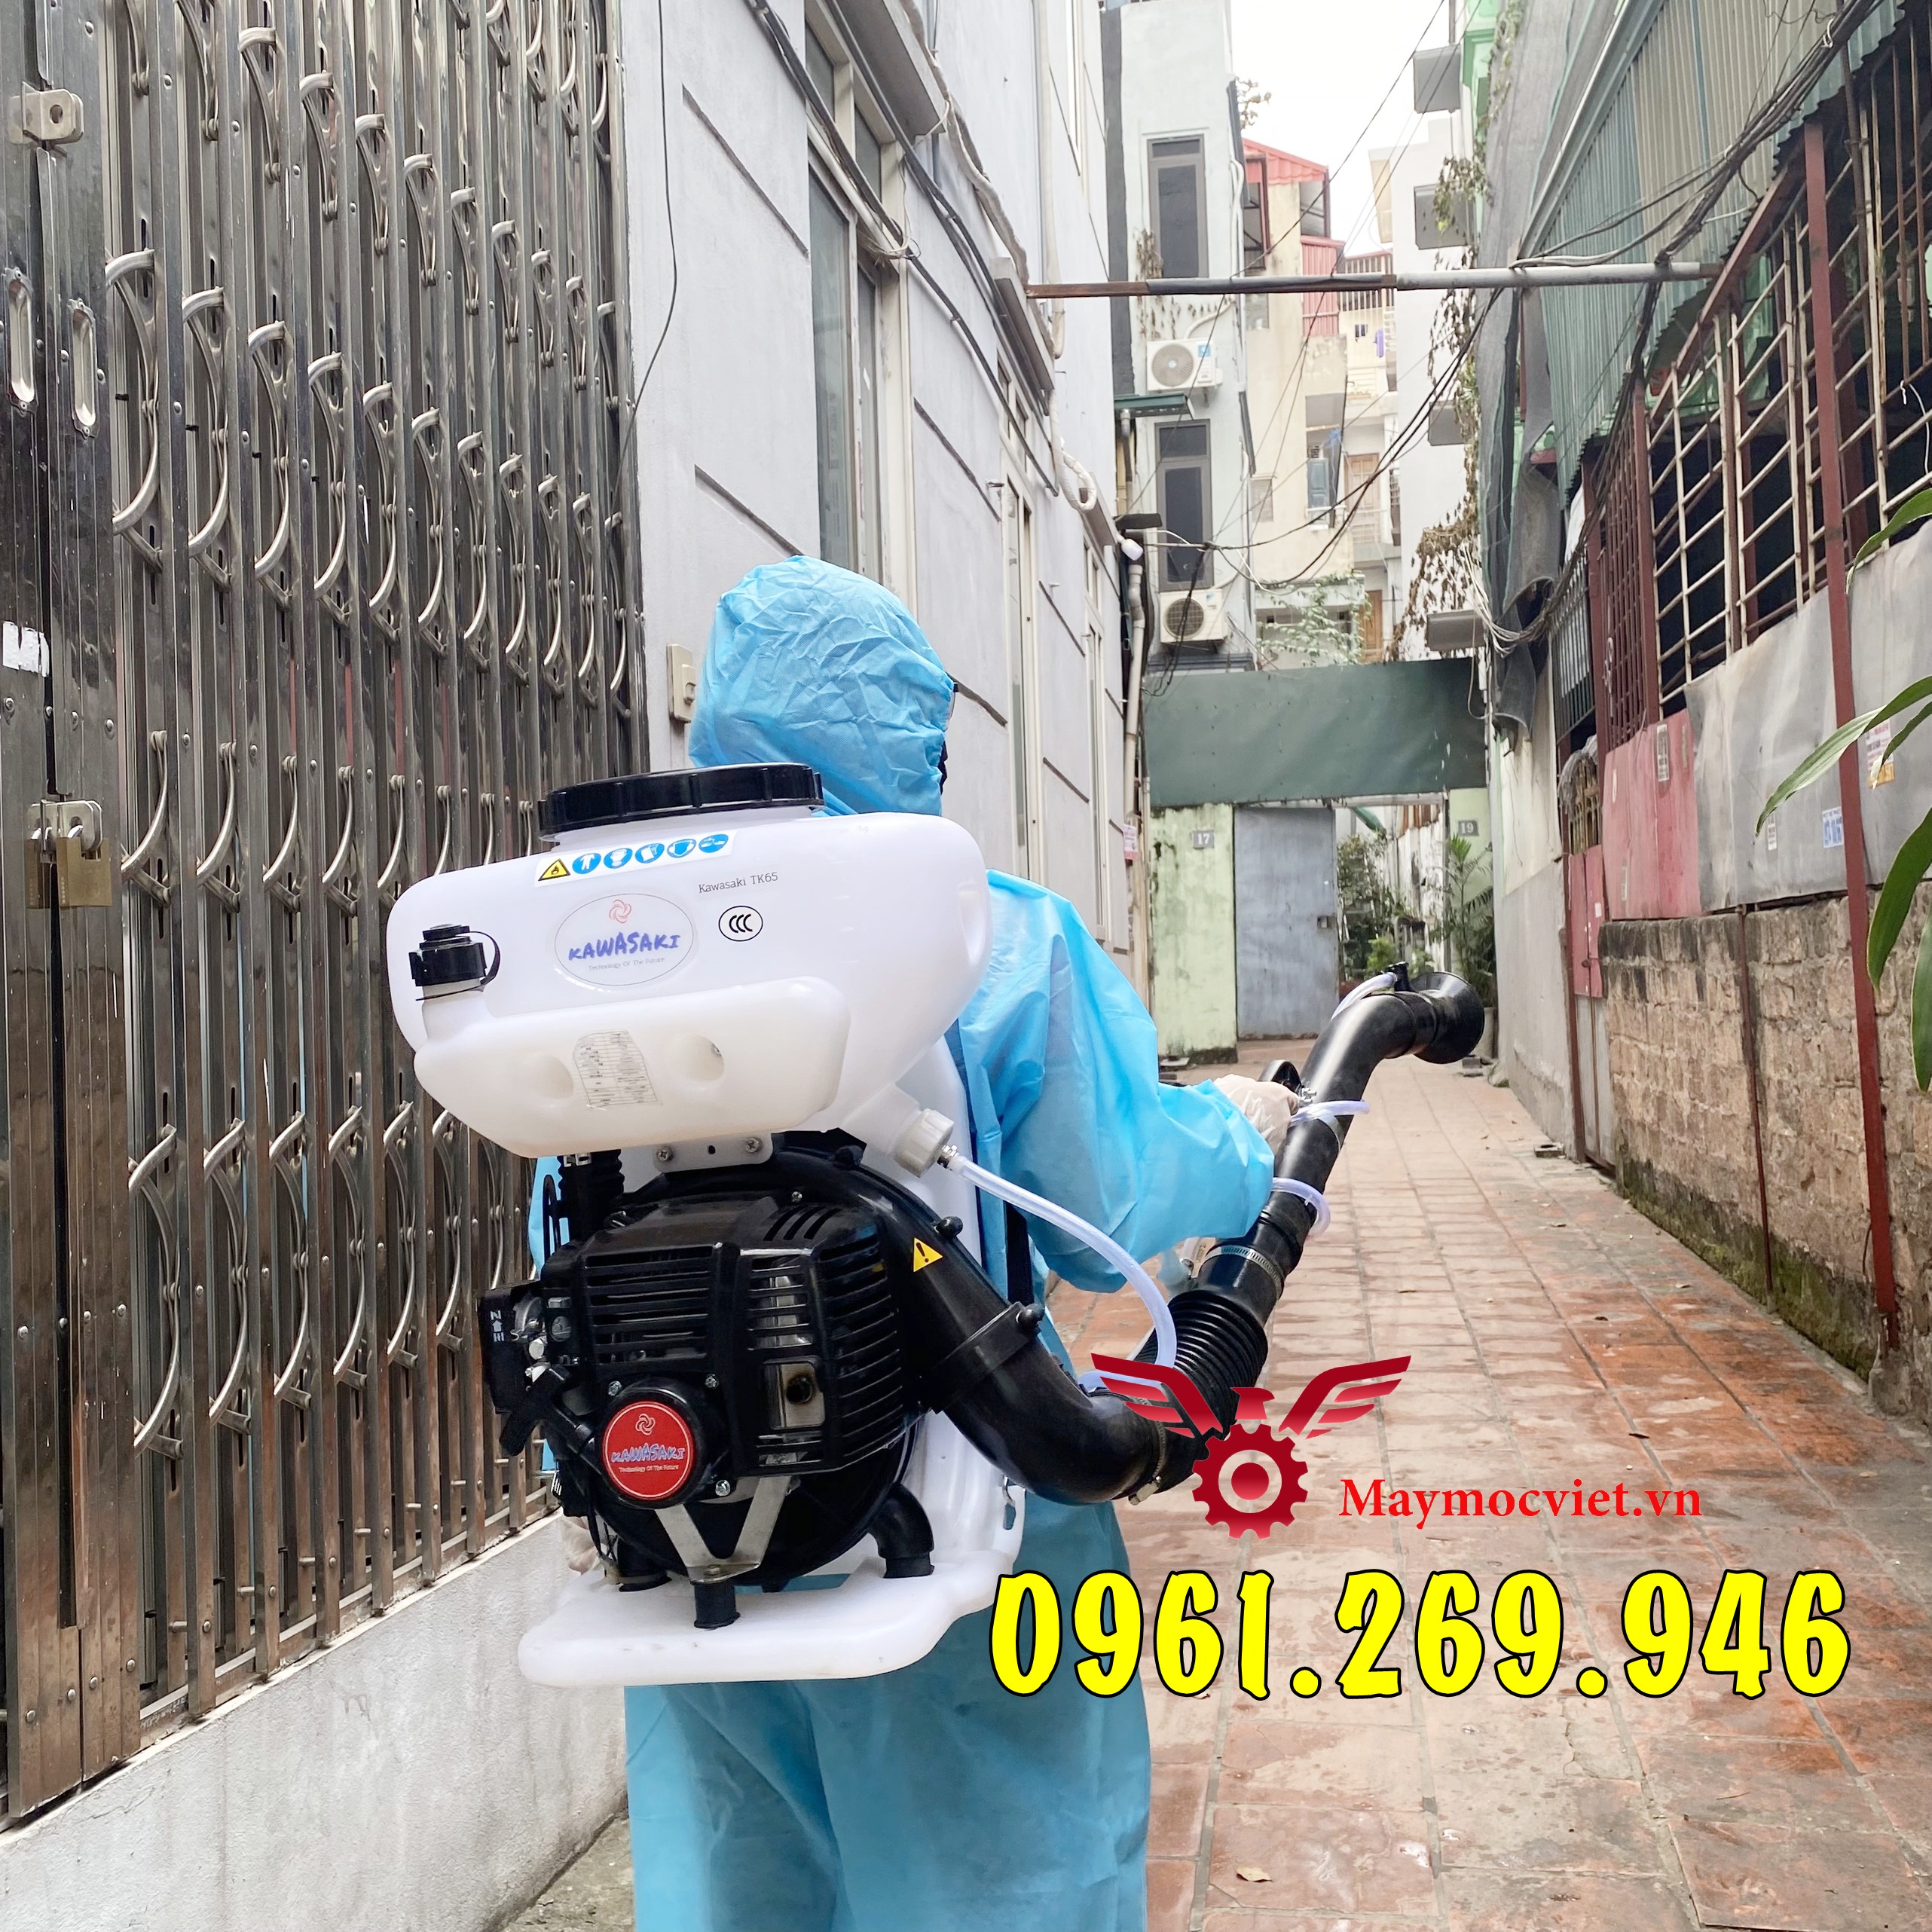 Máy phun muỗi Kawasaki TK65 tặng kèm hóa chất diệt côn trùng